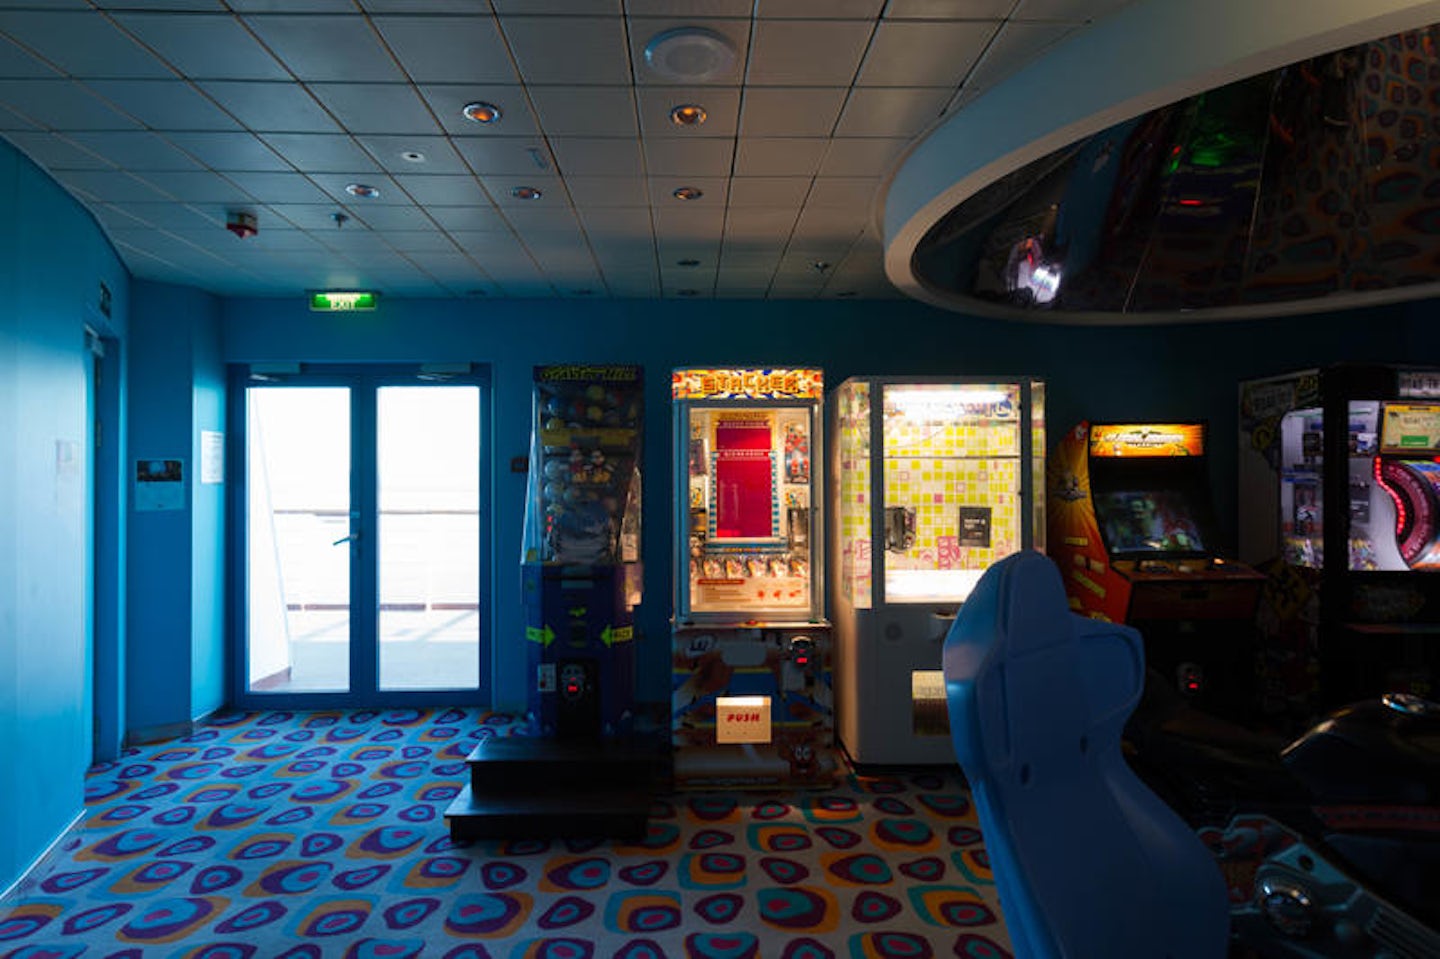 Video Arcade on Celebrity Millennium